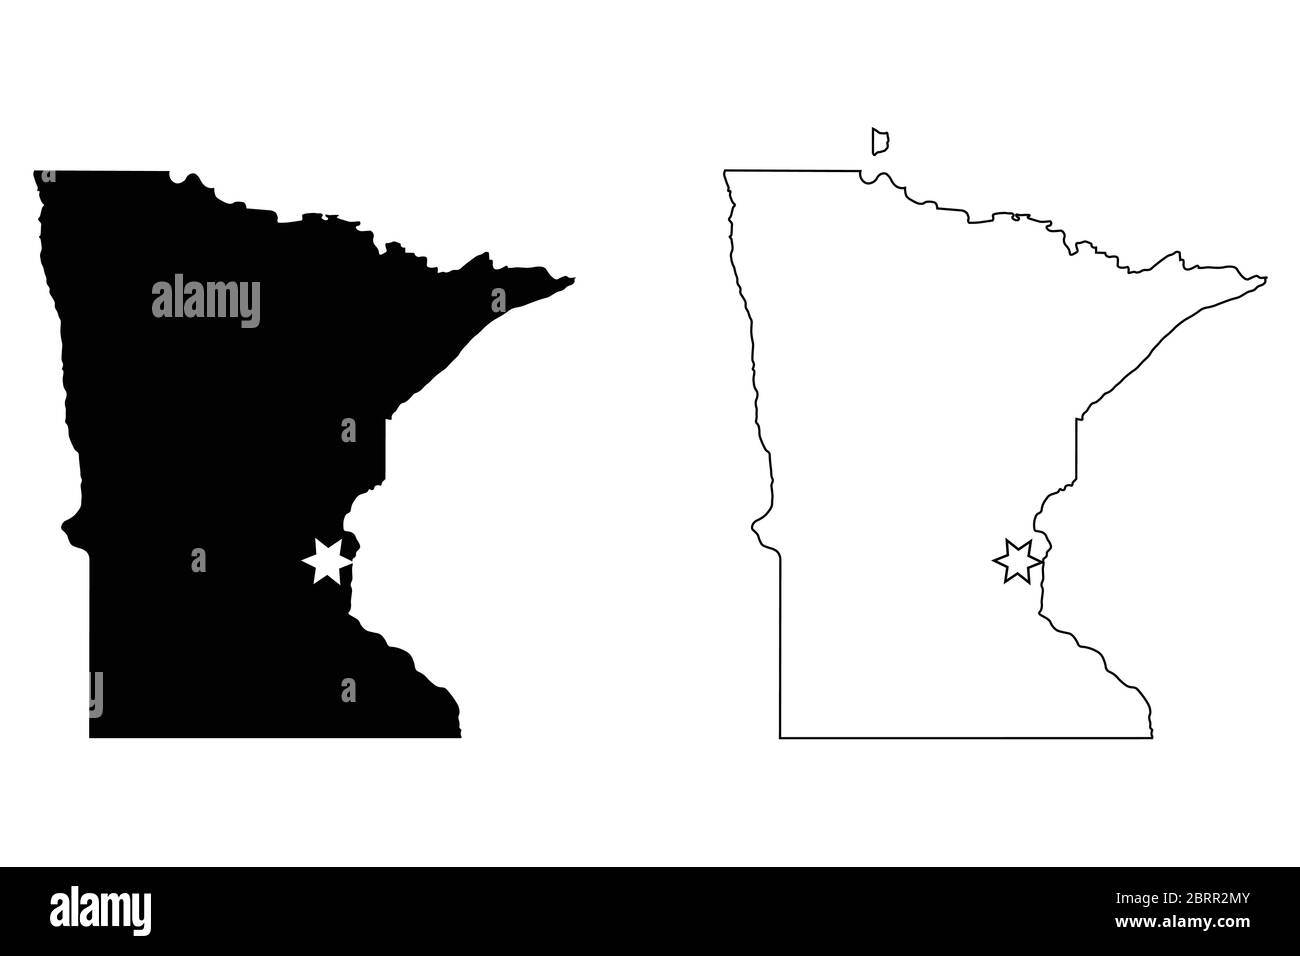 Minnesota MN state Map USA con Capital City Star a Saint Paul. Silhouette nera e profilo isolato su sfondo bianco. Vettore EPS Illustrazione Vettoriale